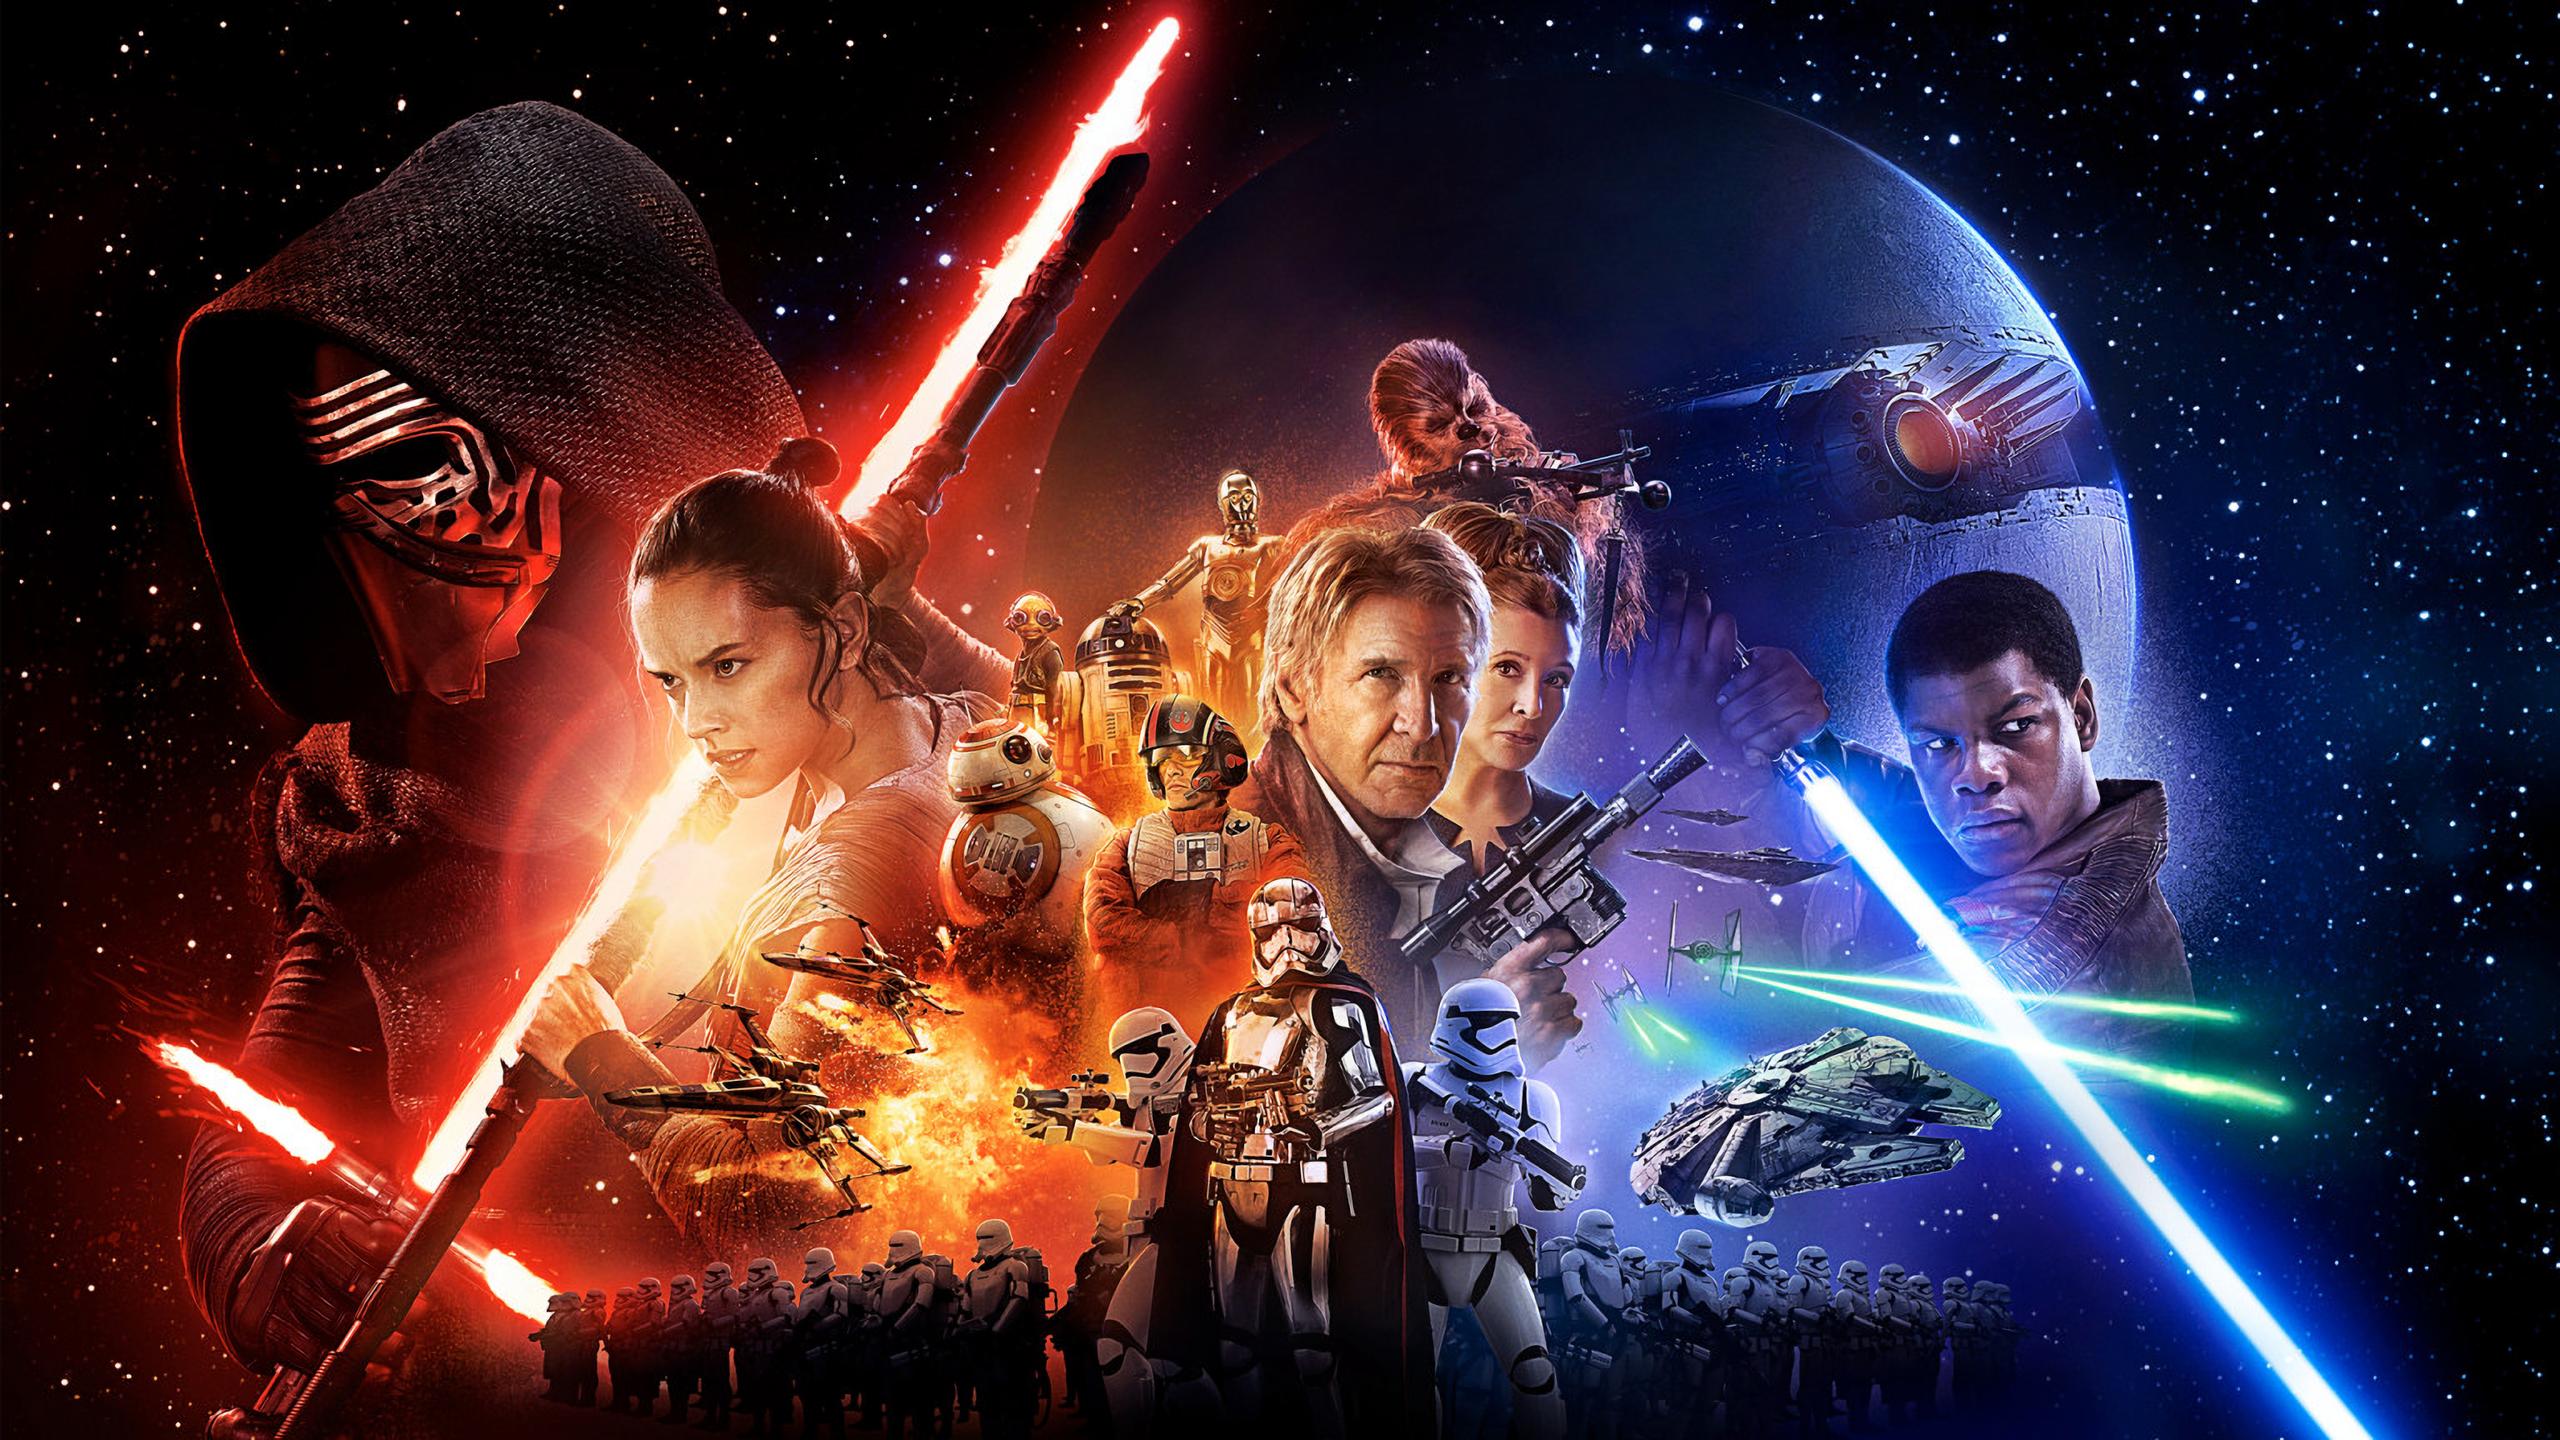 Star Wars Episode Vii The Force Awakens Kylo Ren Han Solo Rey Star Wars Chewbacca R2 D2 Millennium F 2560x1440